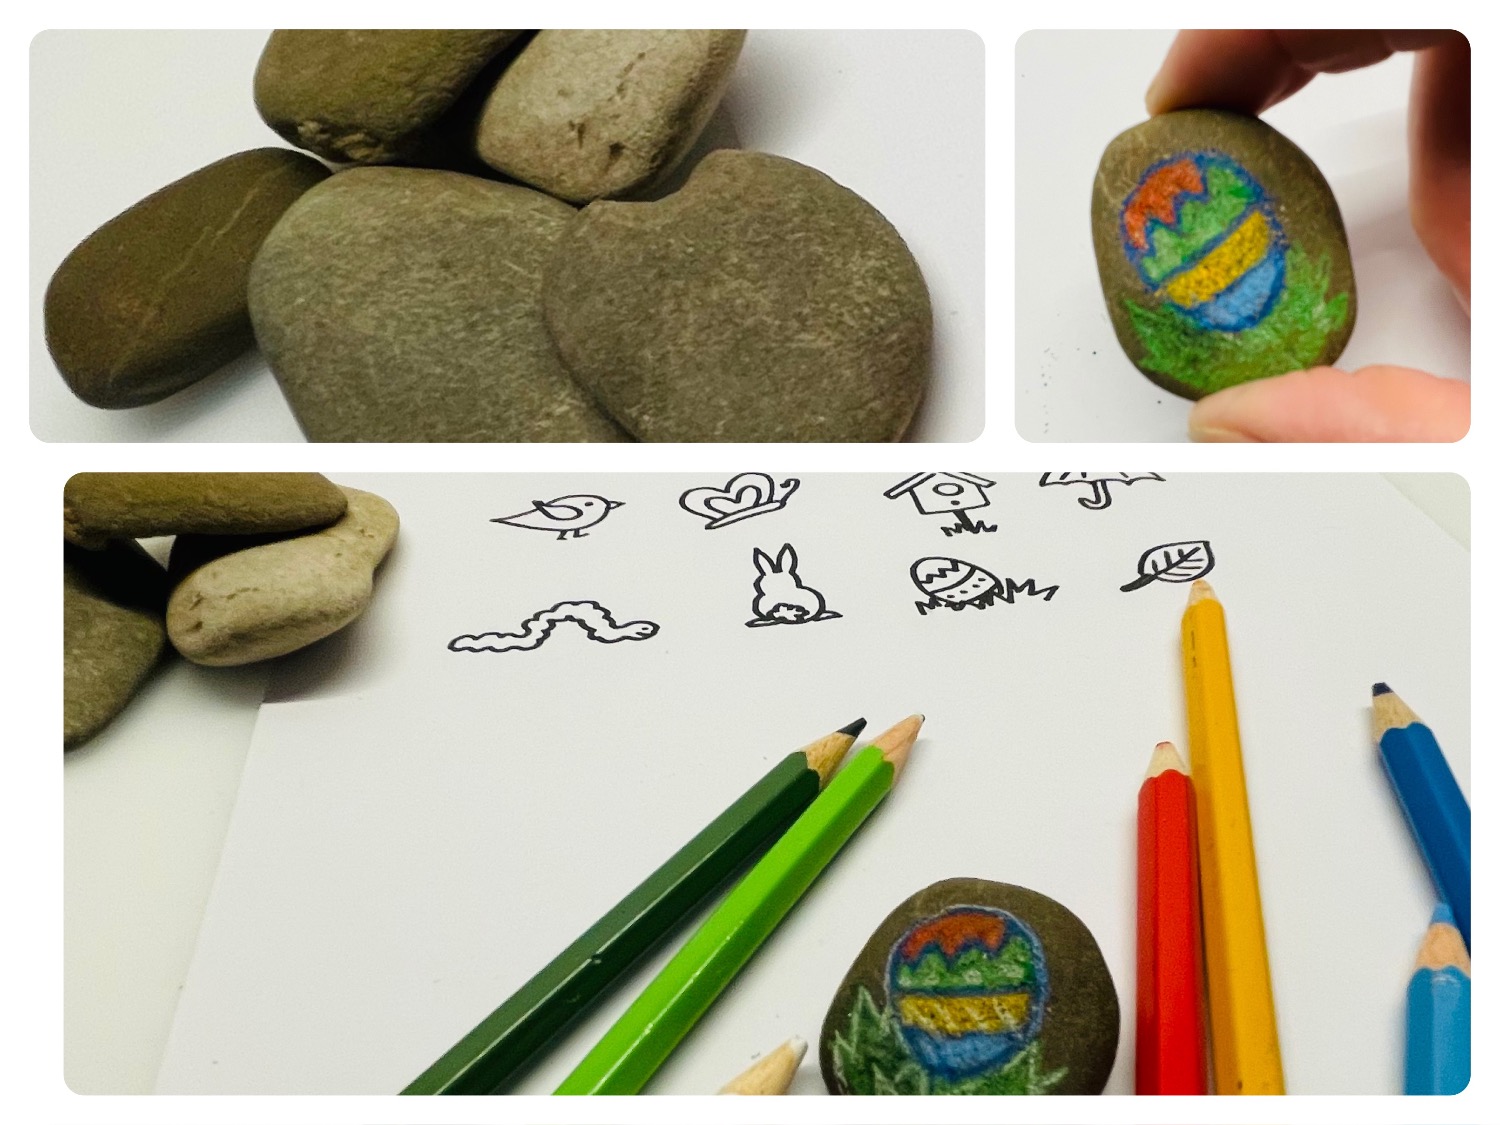 Titelbild zur Idee für die Beschäftigung mit Kindern 'Frühlingsmotive auf Steine malen'